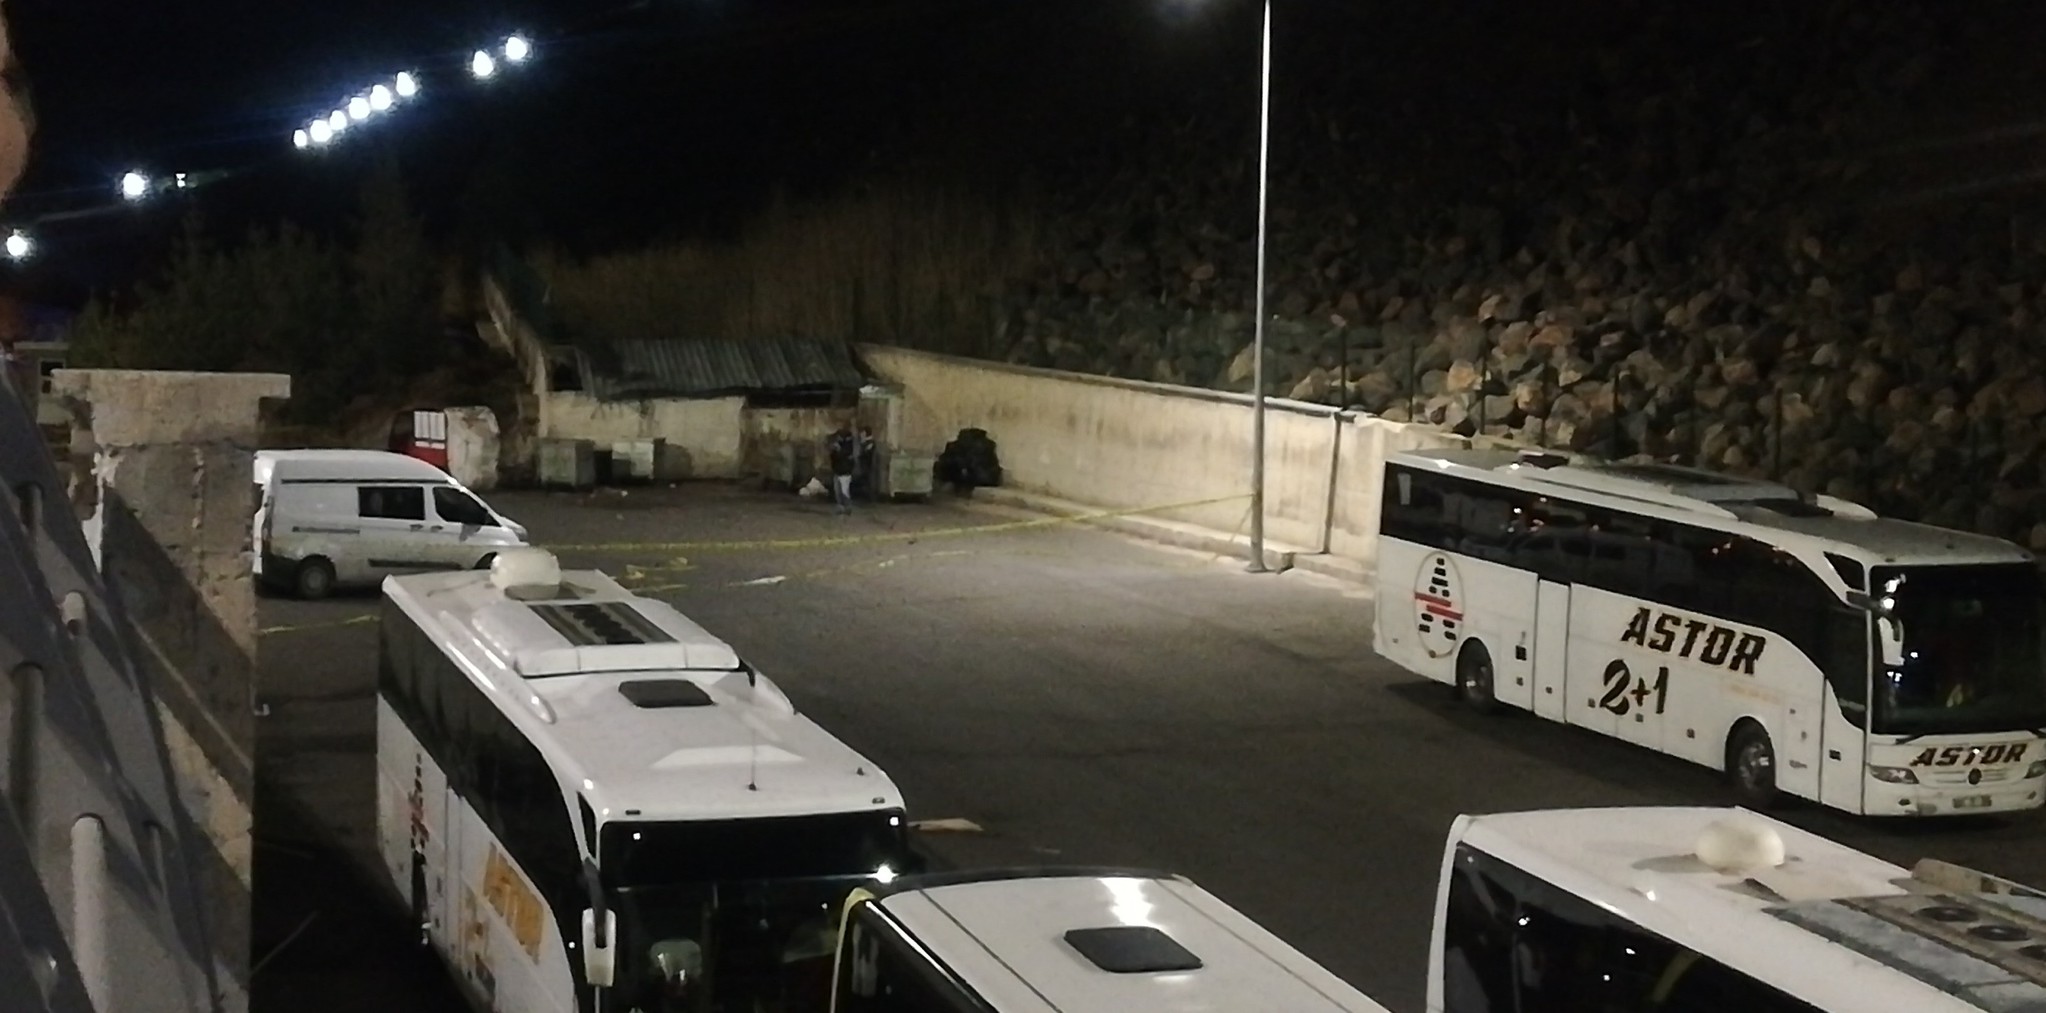 SON DAKİKA | Otogarda hareketli gece! Çöp konteynerinde bomba bulundu